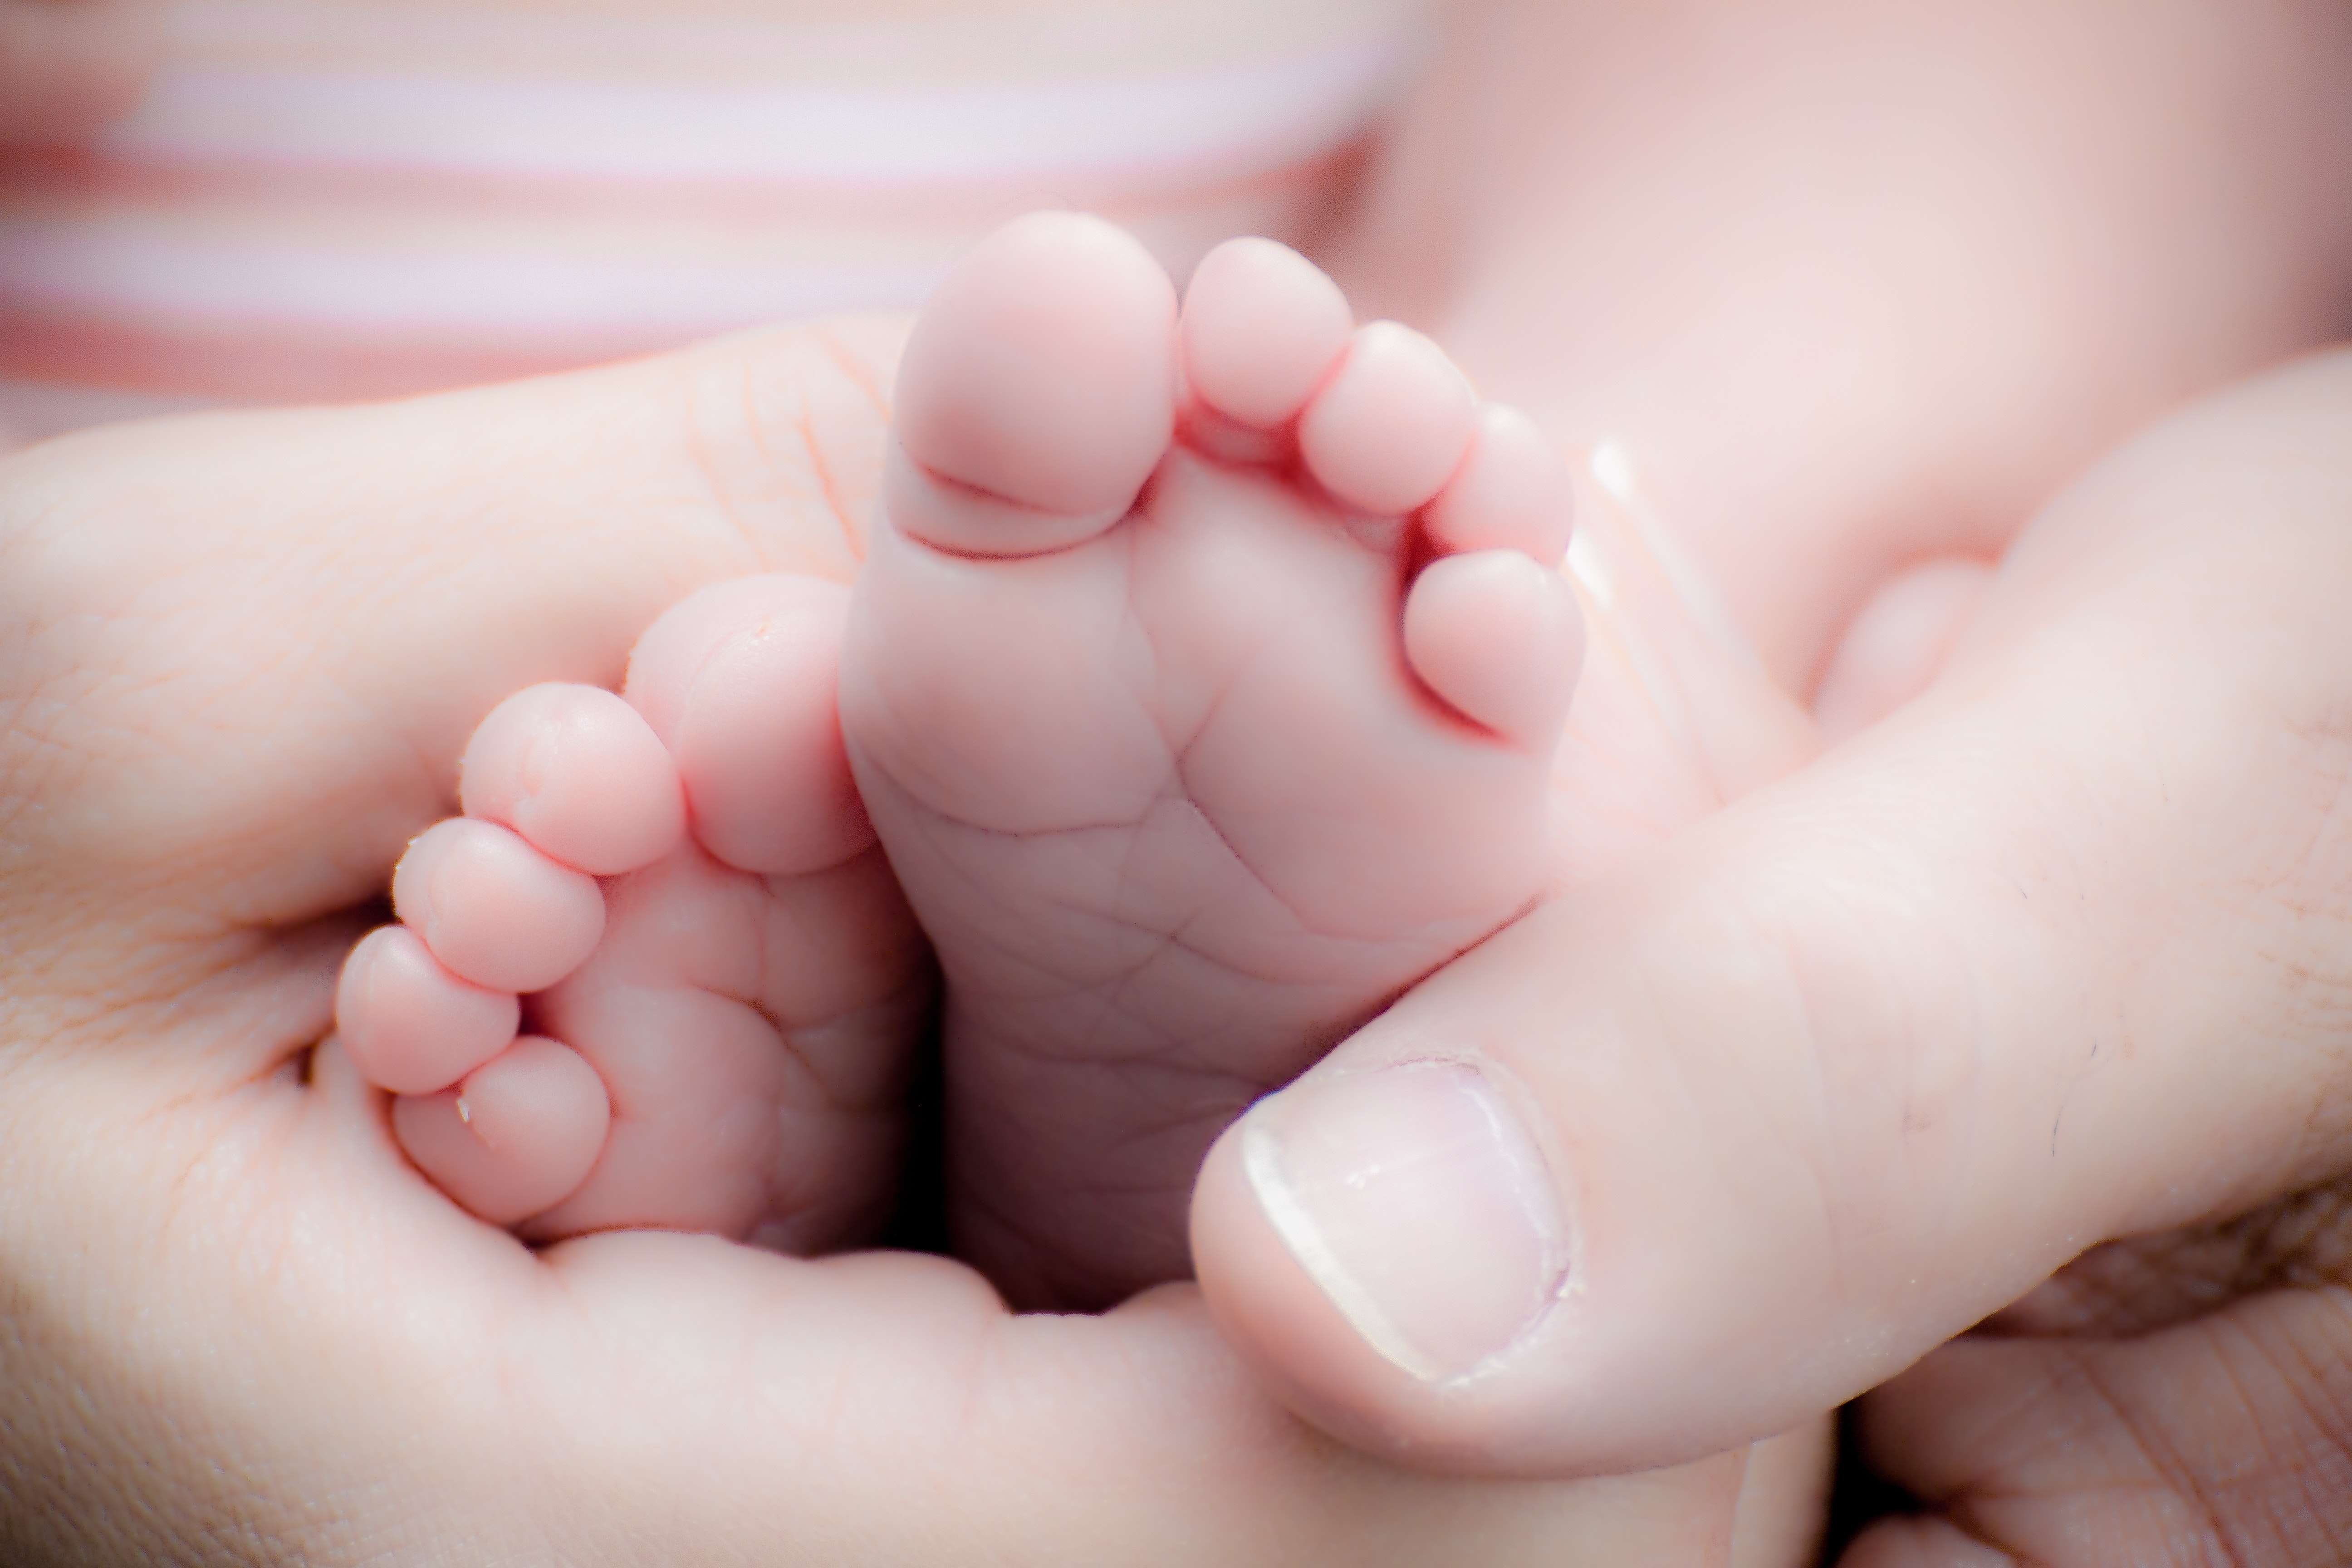 177 Heartwarming Baby Photos · Pexels · Free Stock Photos